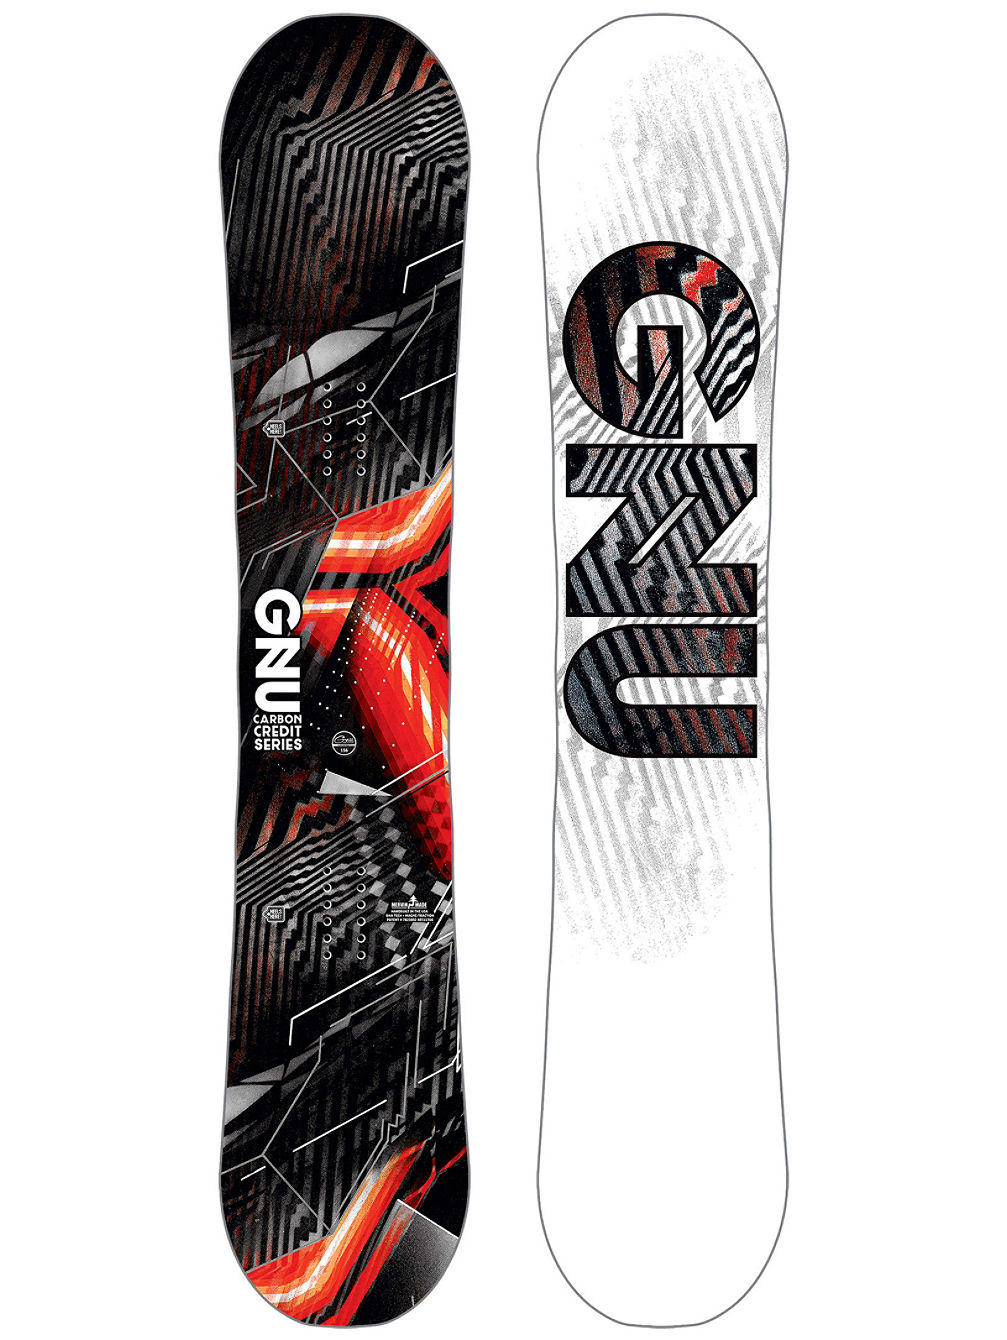 Asym Carbon Credit BTX 156W Snowboard